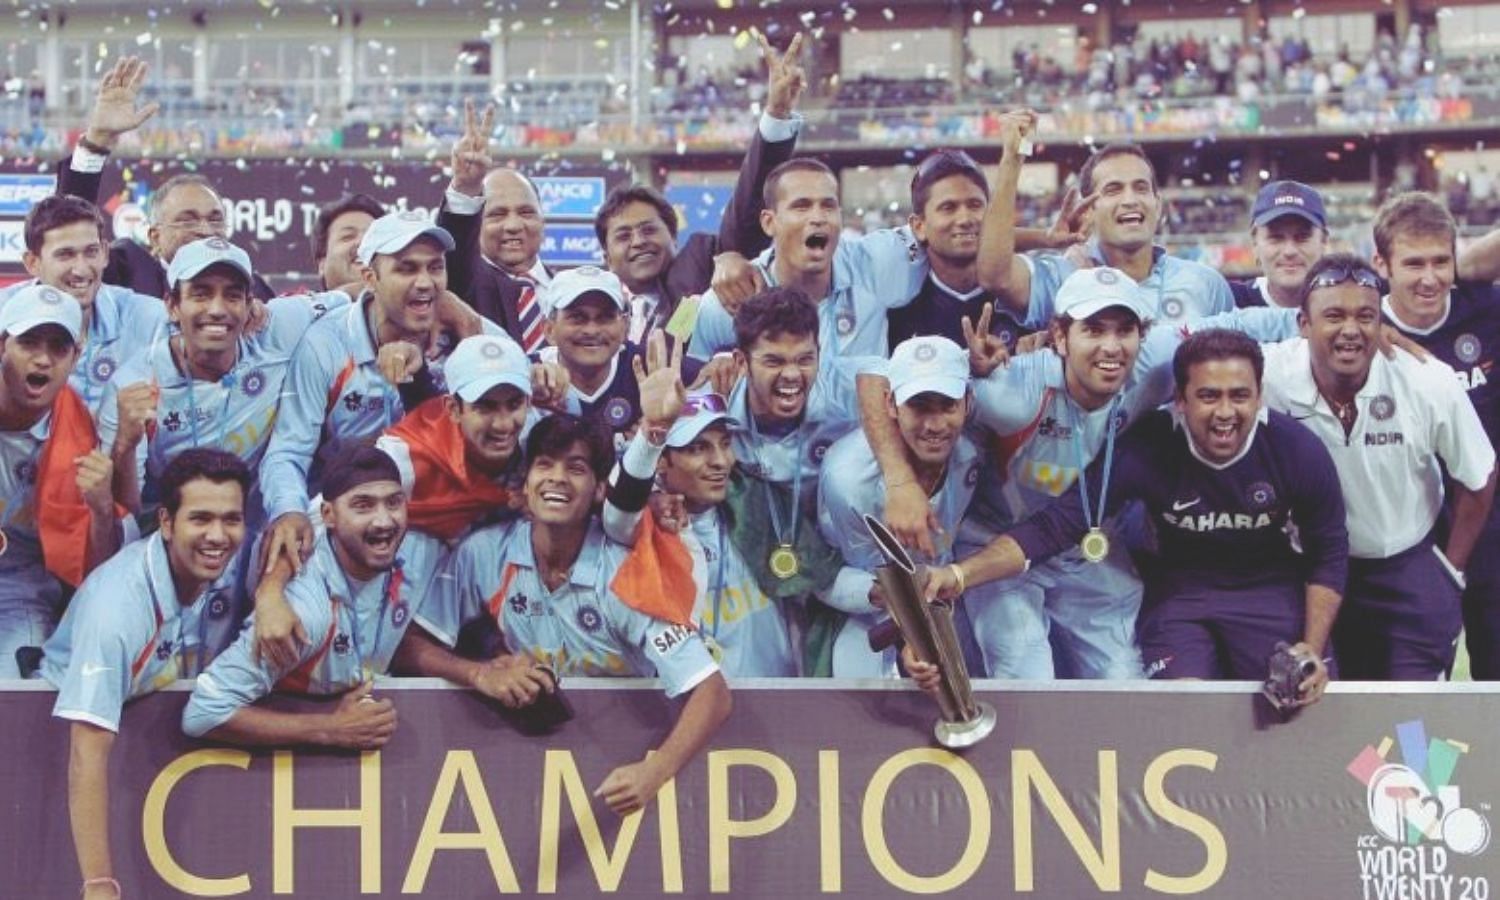 <div class="paragraphs"><p>टी20 के पहले विश्व विजेता, भारत का टी20 विश्व कप में अब तक का सफर</p></div>